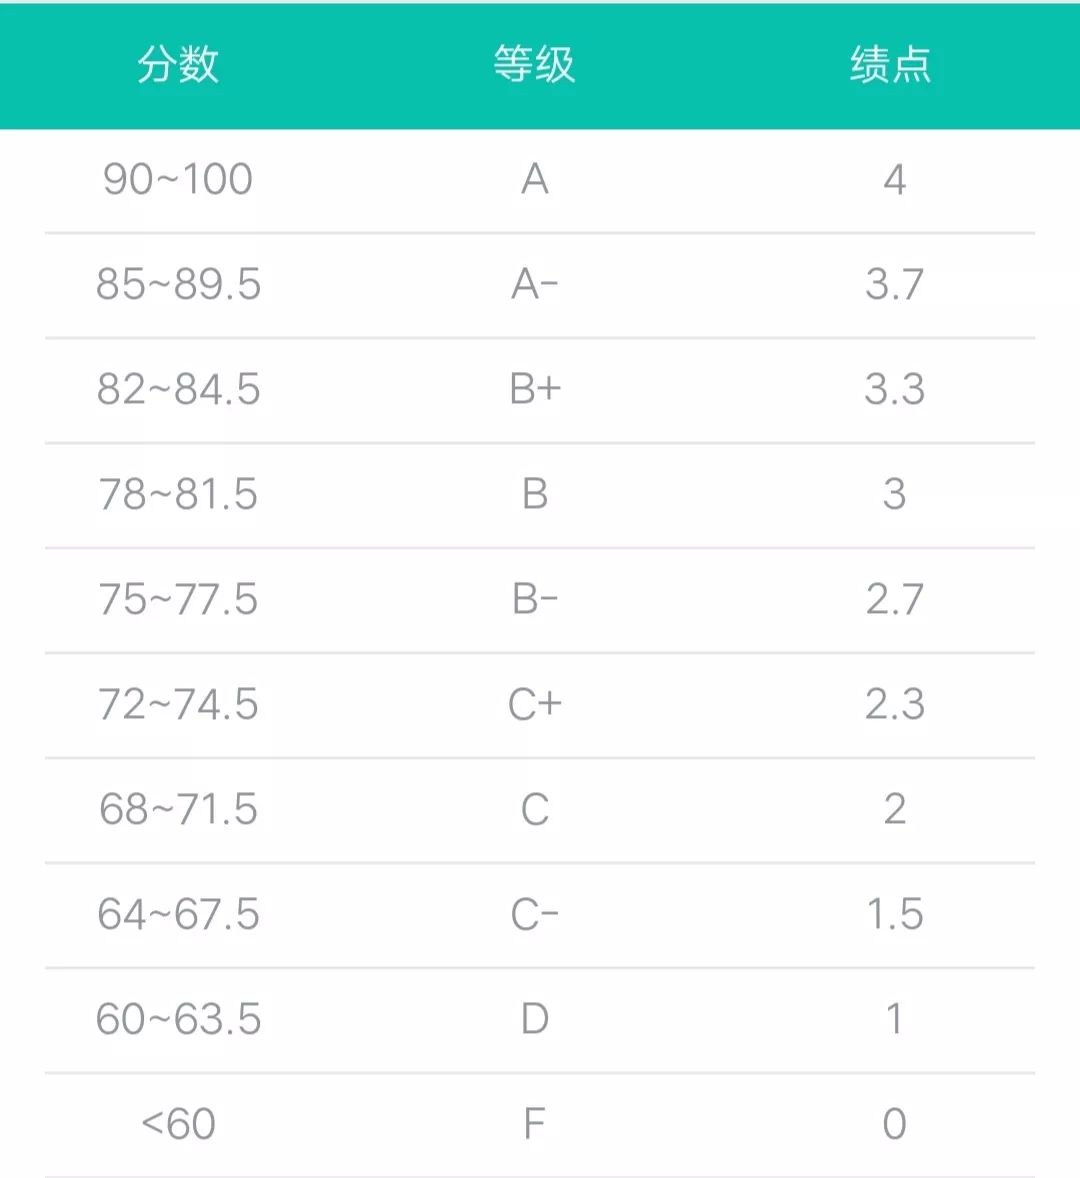 成绩绩点对照表平均学分绩点=∑(课程学分×成绩绩点)/∑课程学分gpa